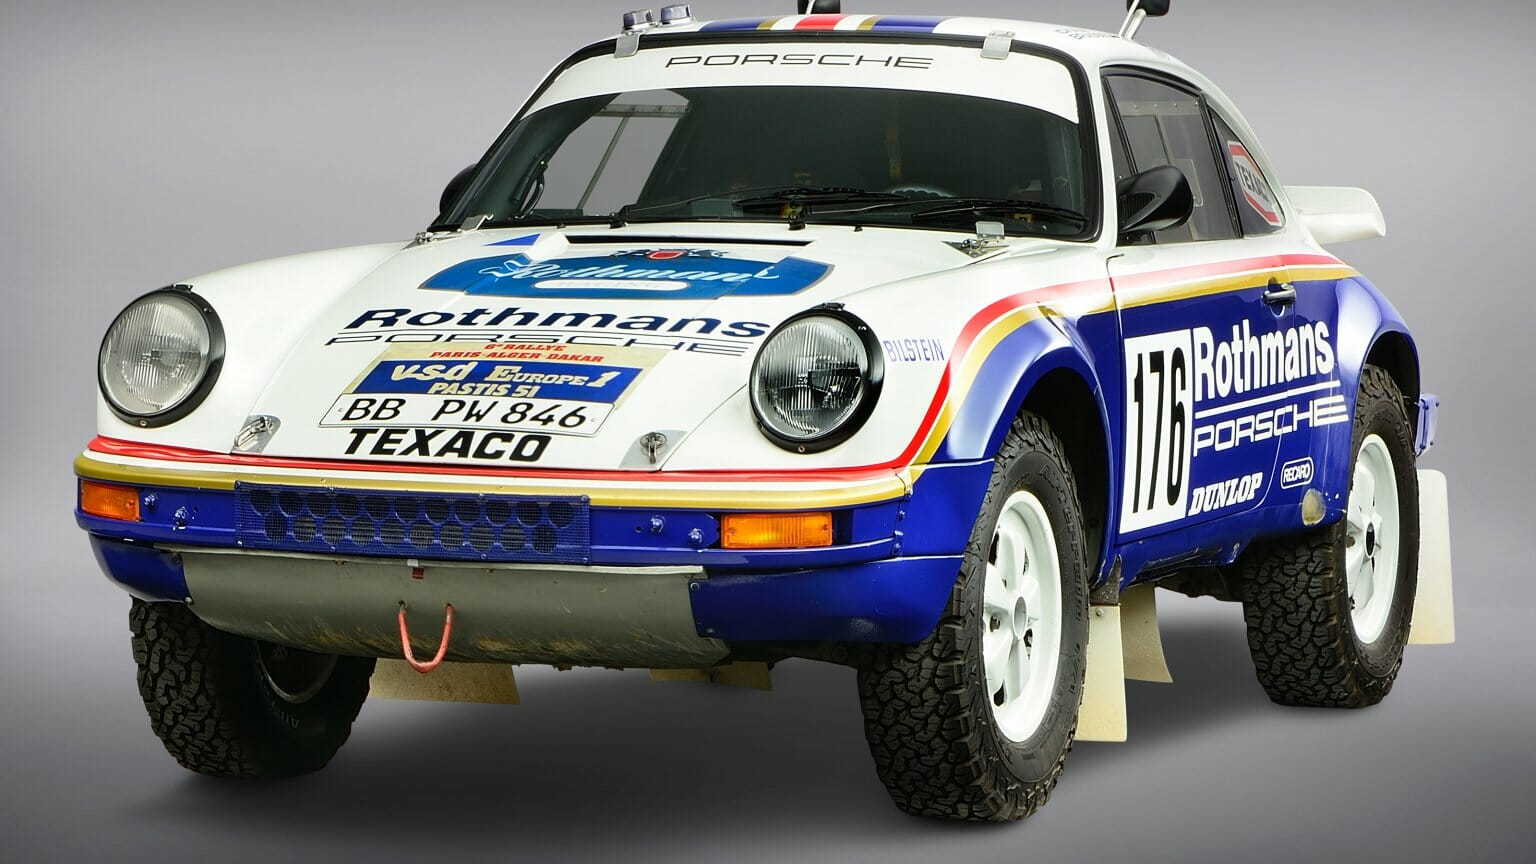 Porsche will showcase 1984 Dakar Rally-winning car